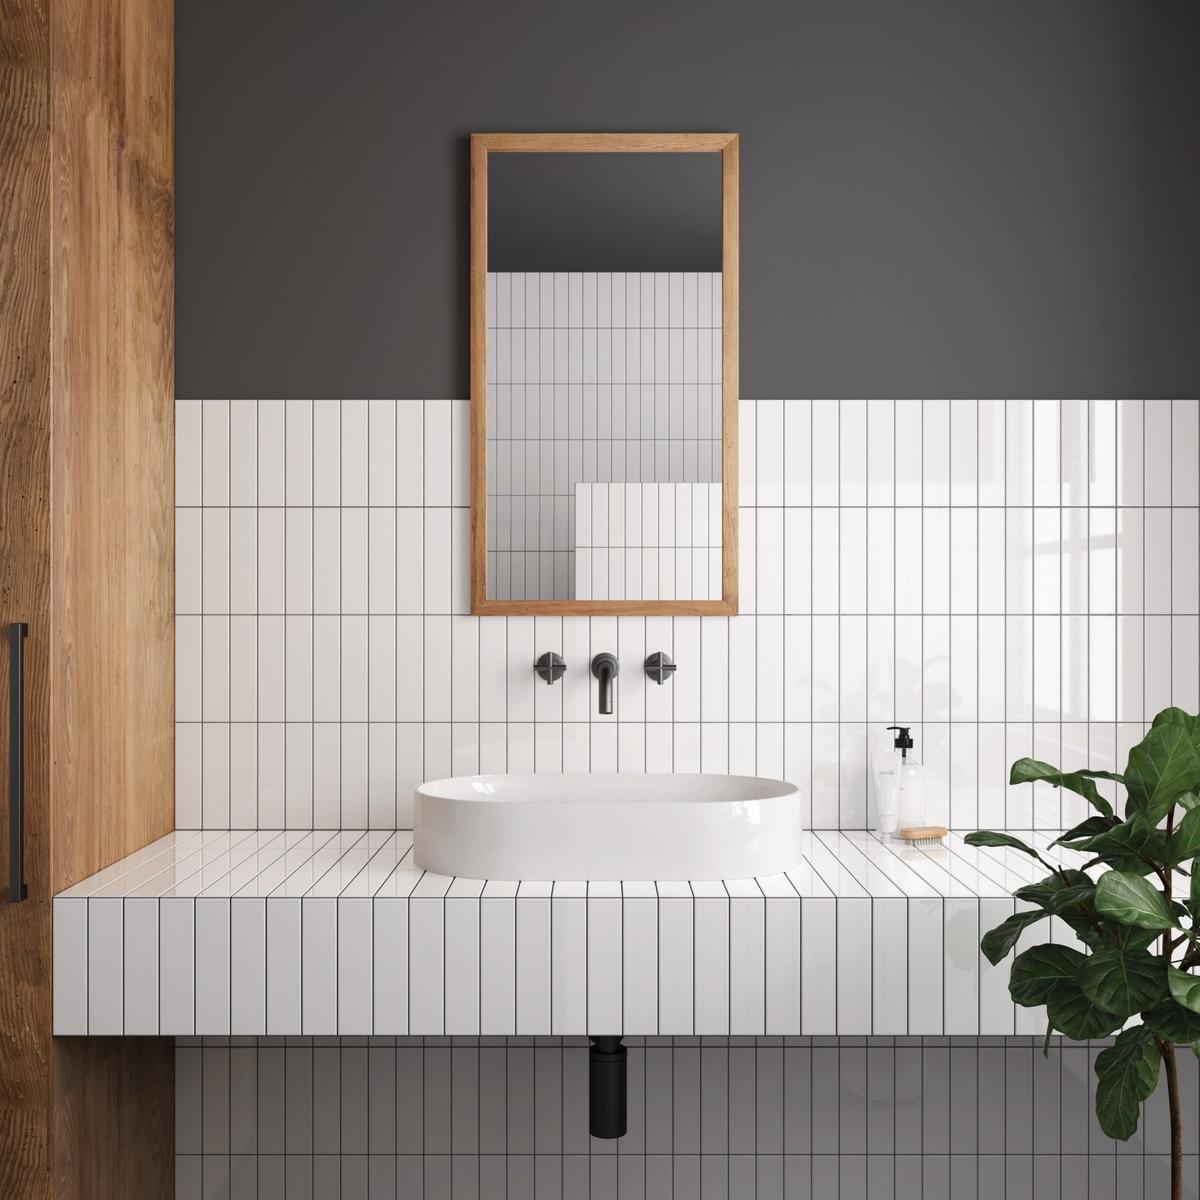 Carrelage uni blanc dans une salle de bain épurée avec murs gris, lavabo moderne, miroir en bois et plante verte